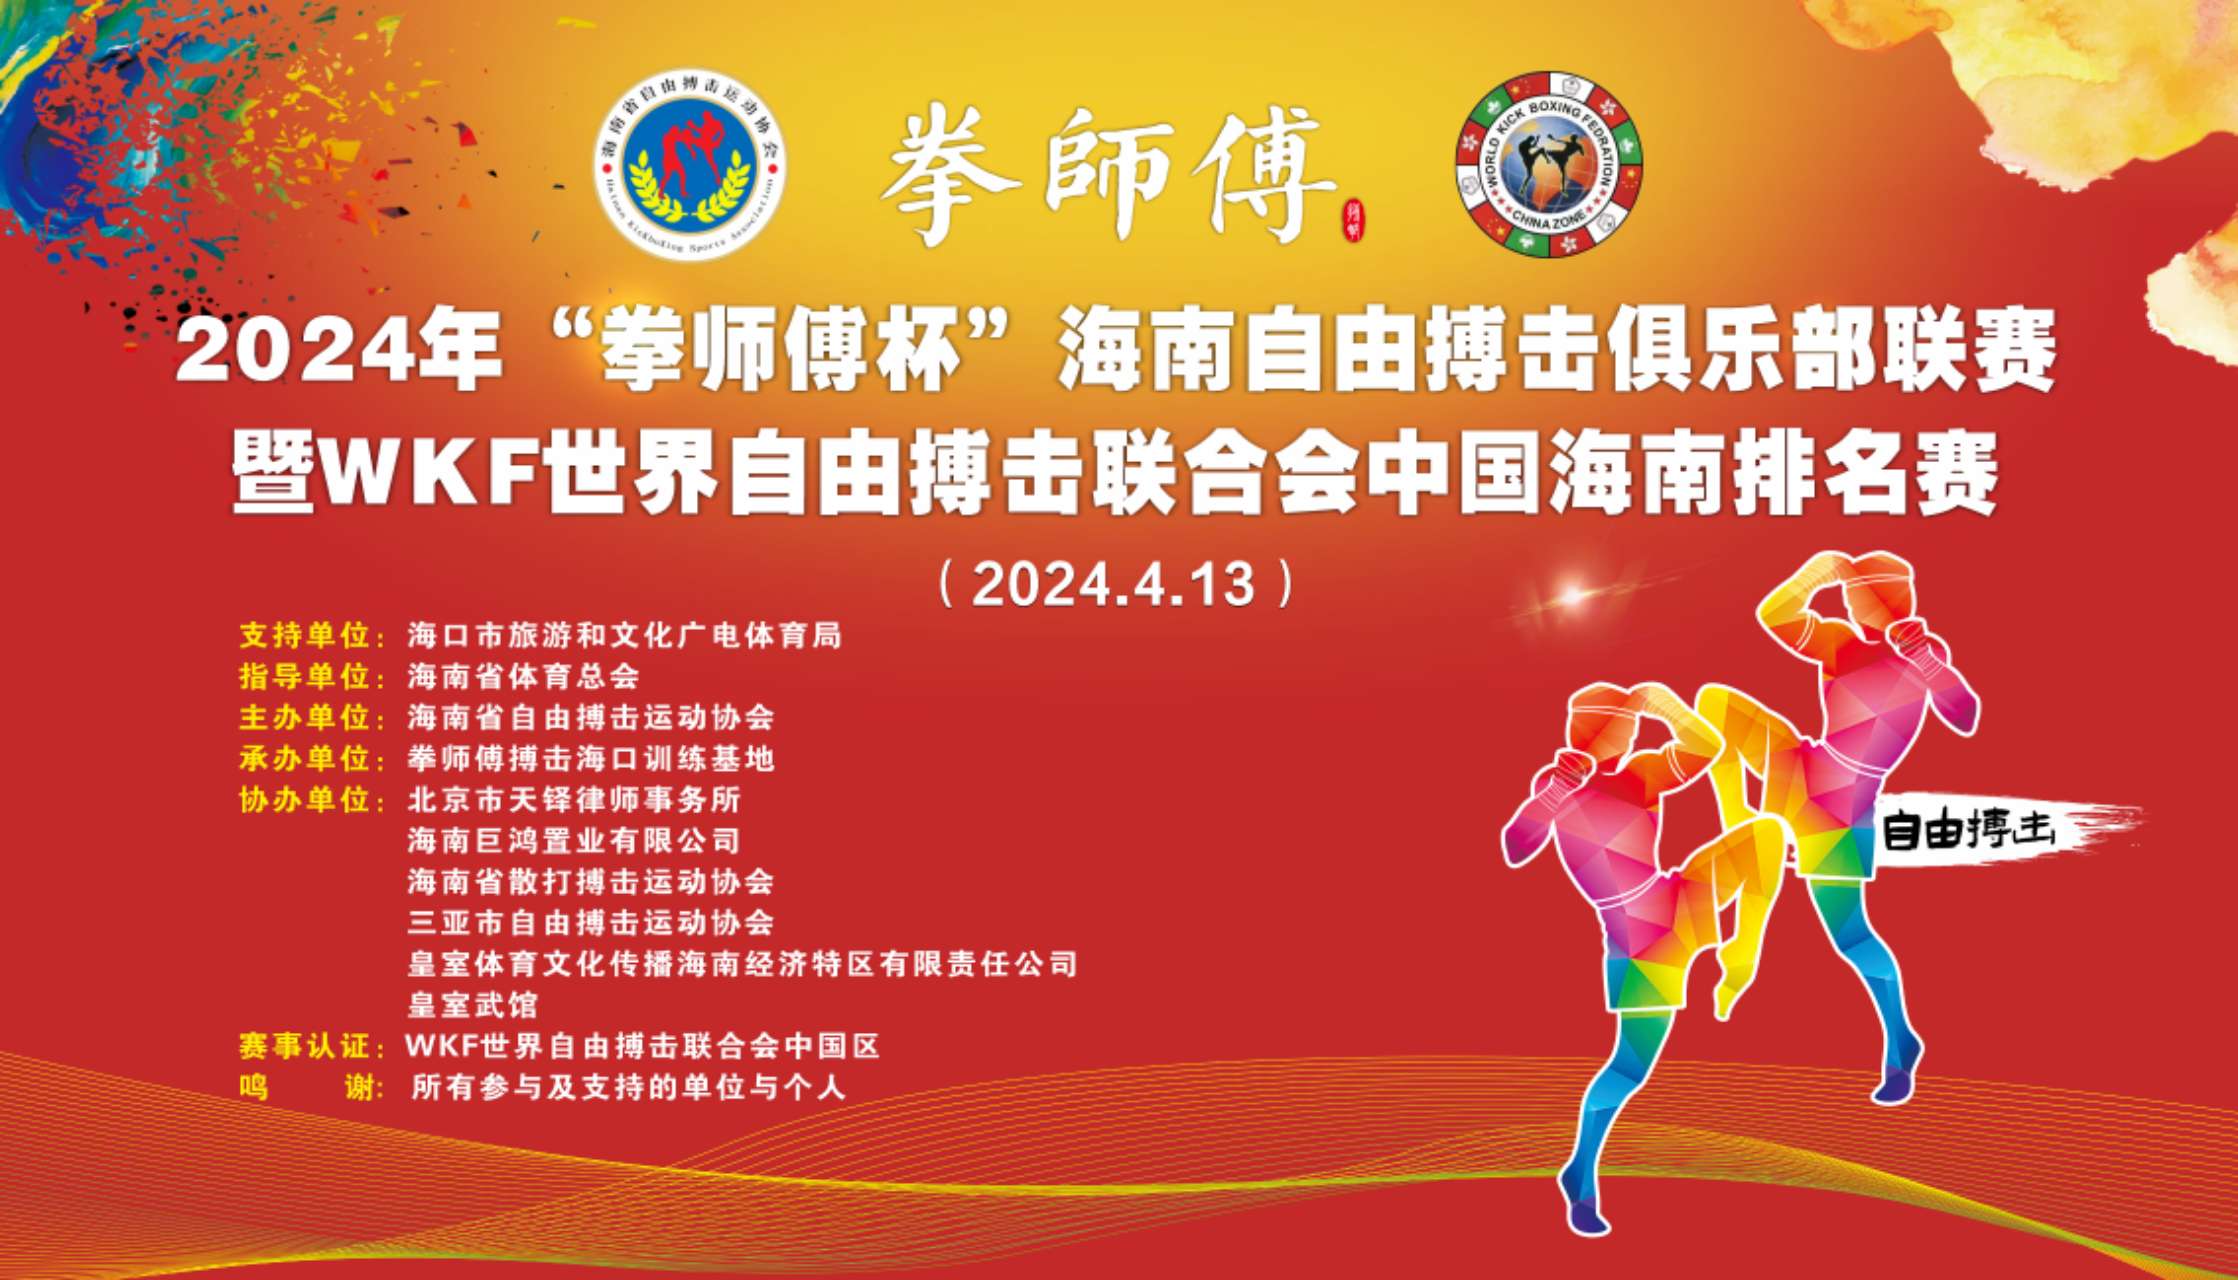 2024年海南自由搏击俱乐部联赛暨WKF世界自由搏击联合会中国海南排名赛(2024年4月13日\海南-海口)